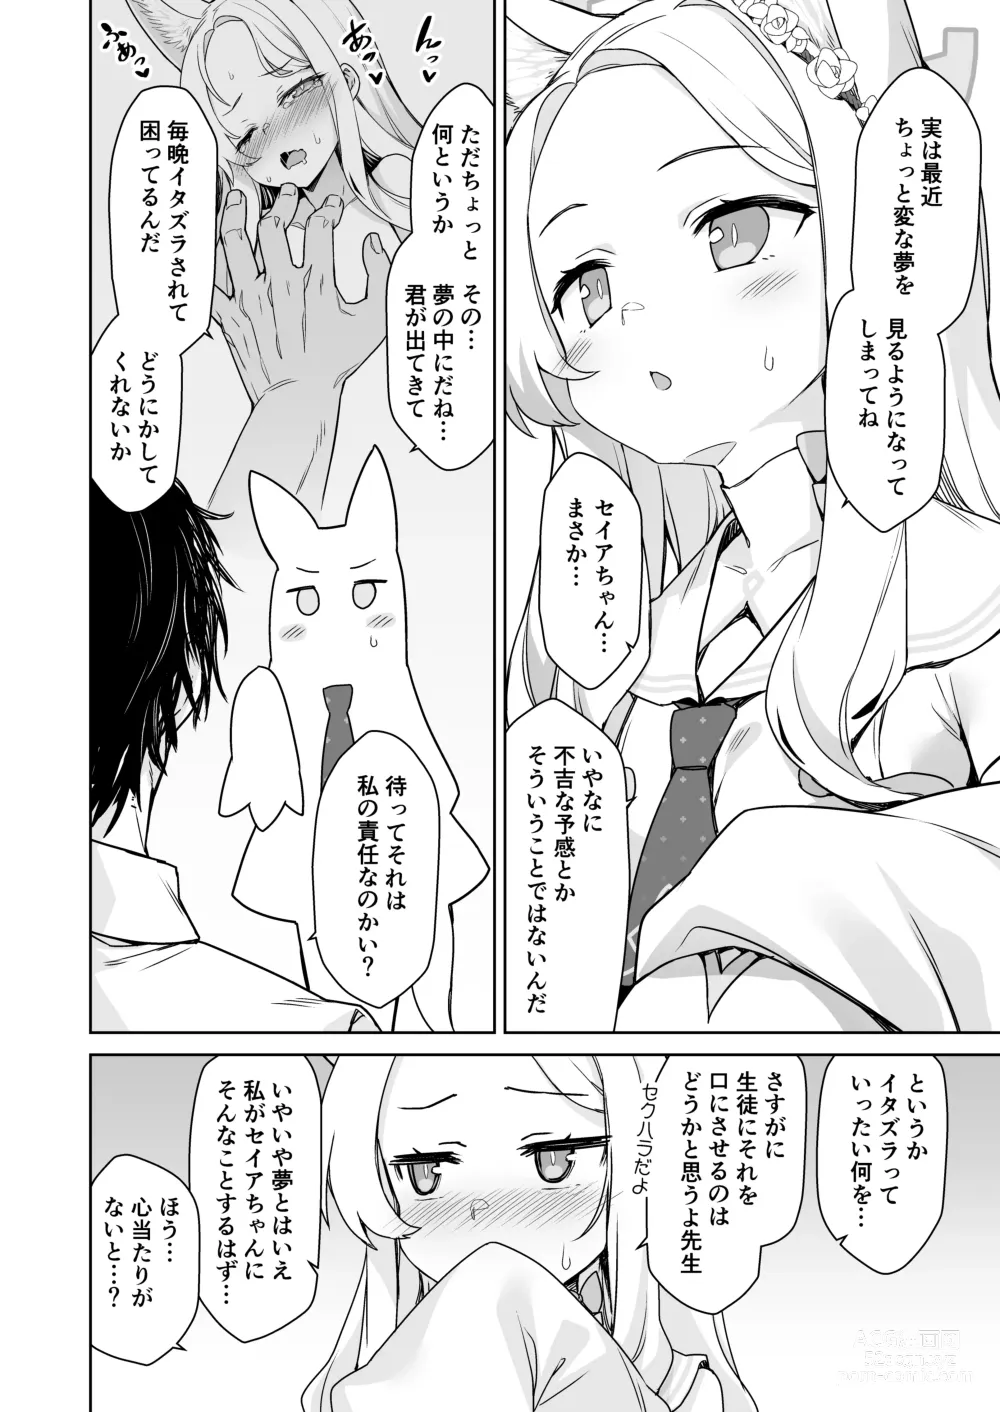 Page 4 of doujinshi Yurizono Seia wa Koyoi mo Midara na Yume wo Miru.